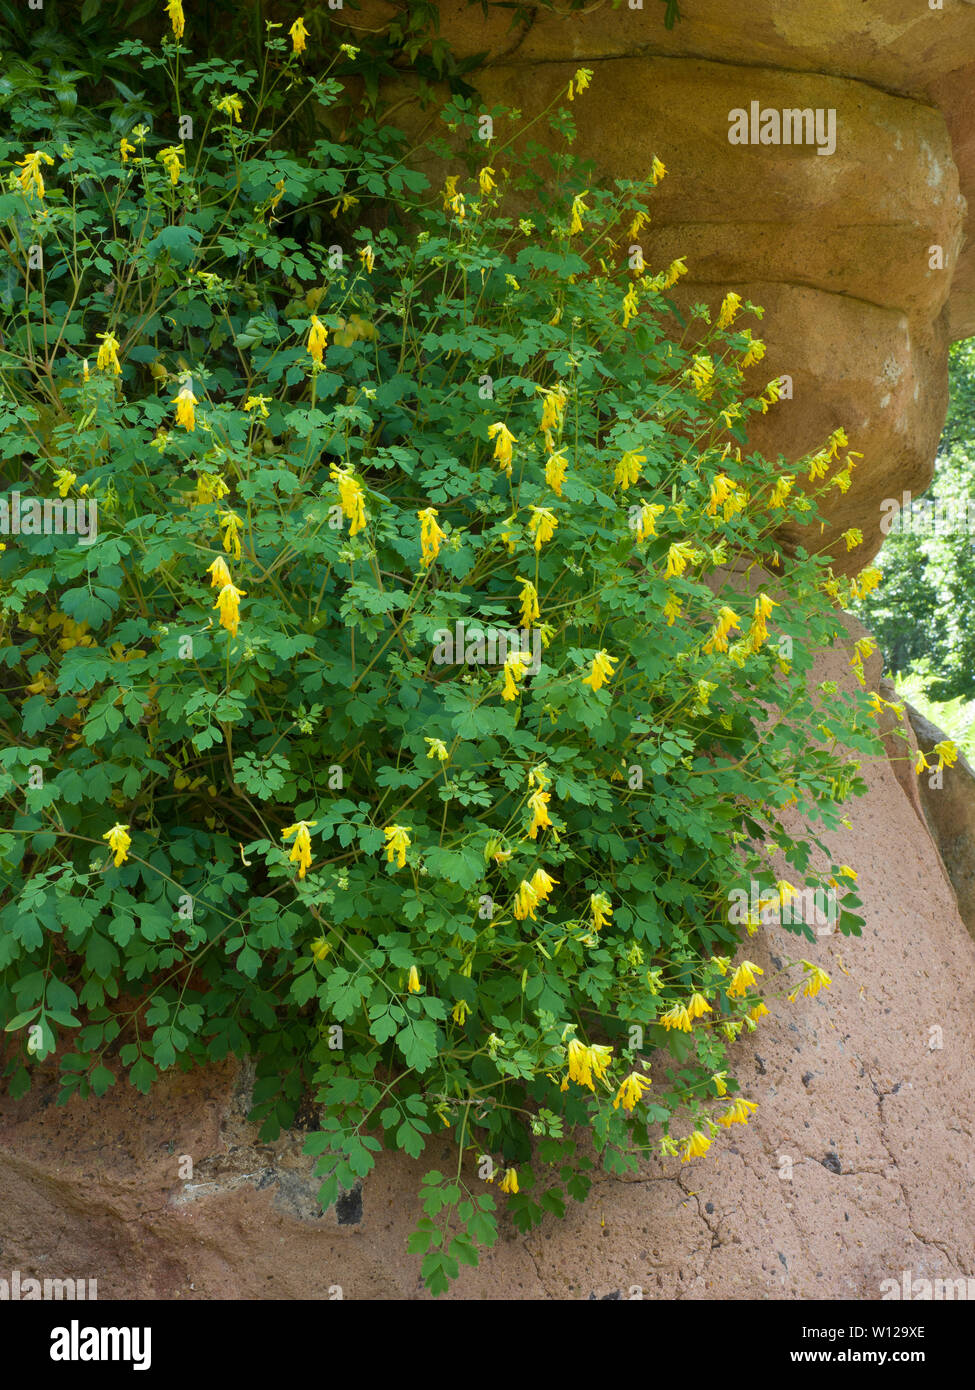 Yellow Corydalis,Corydalis lutea, growing on rock, Worcestershire, UK Stock Photo